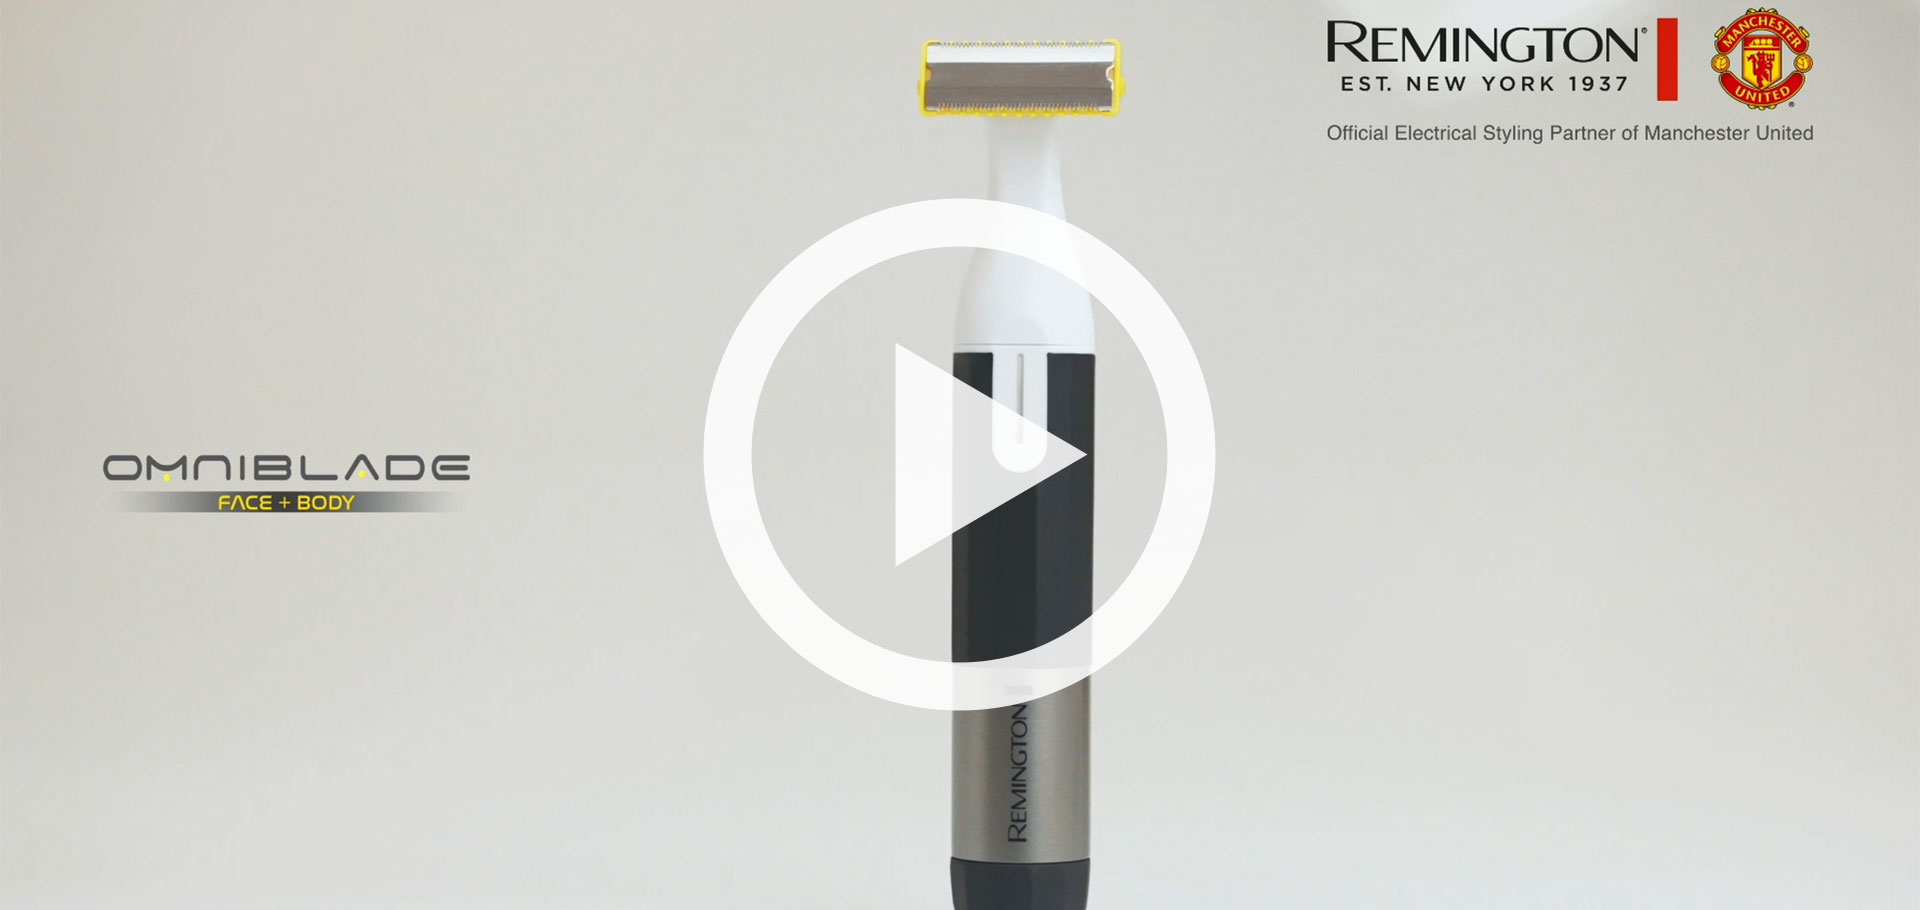 Omniblade Face + Body Hybridgroomer | Remington